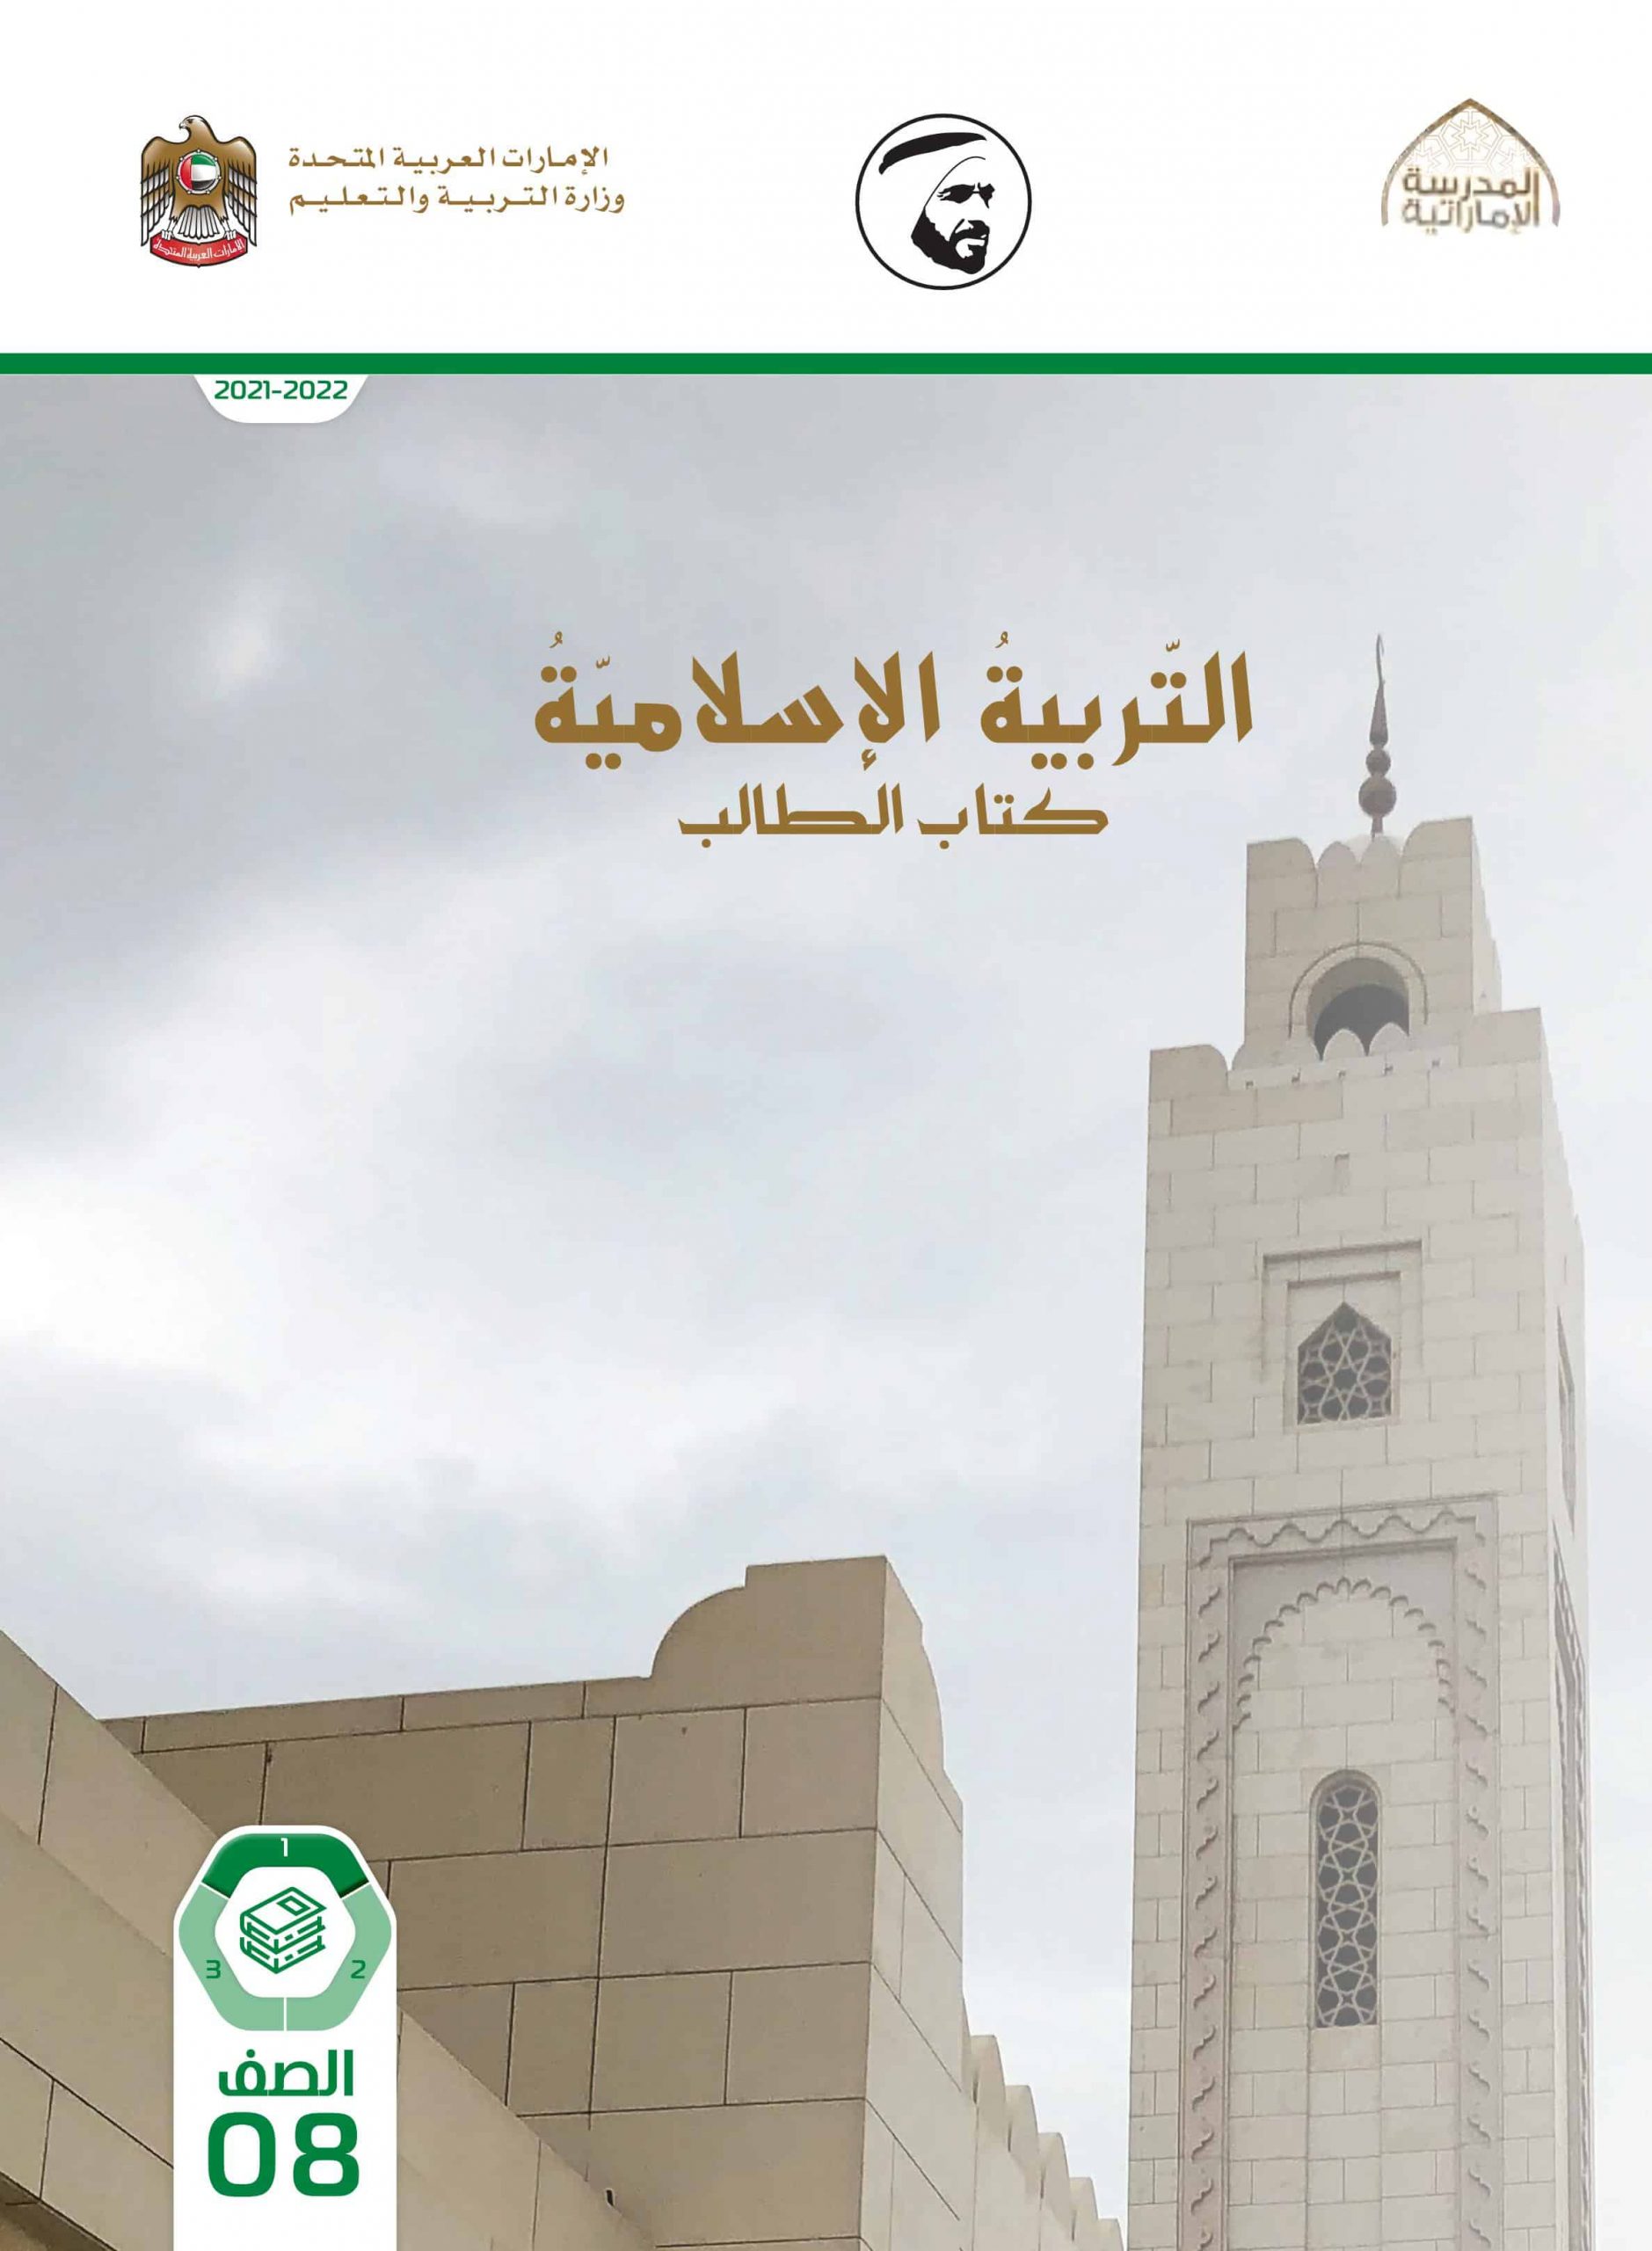 كتاب الطالب الفصل الدراسي الأول 2021-2022 الصف الثامن مادة التربية الإسلامية